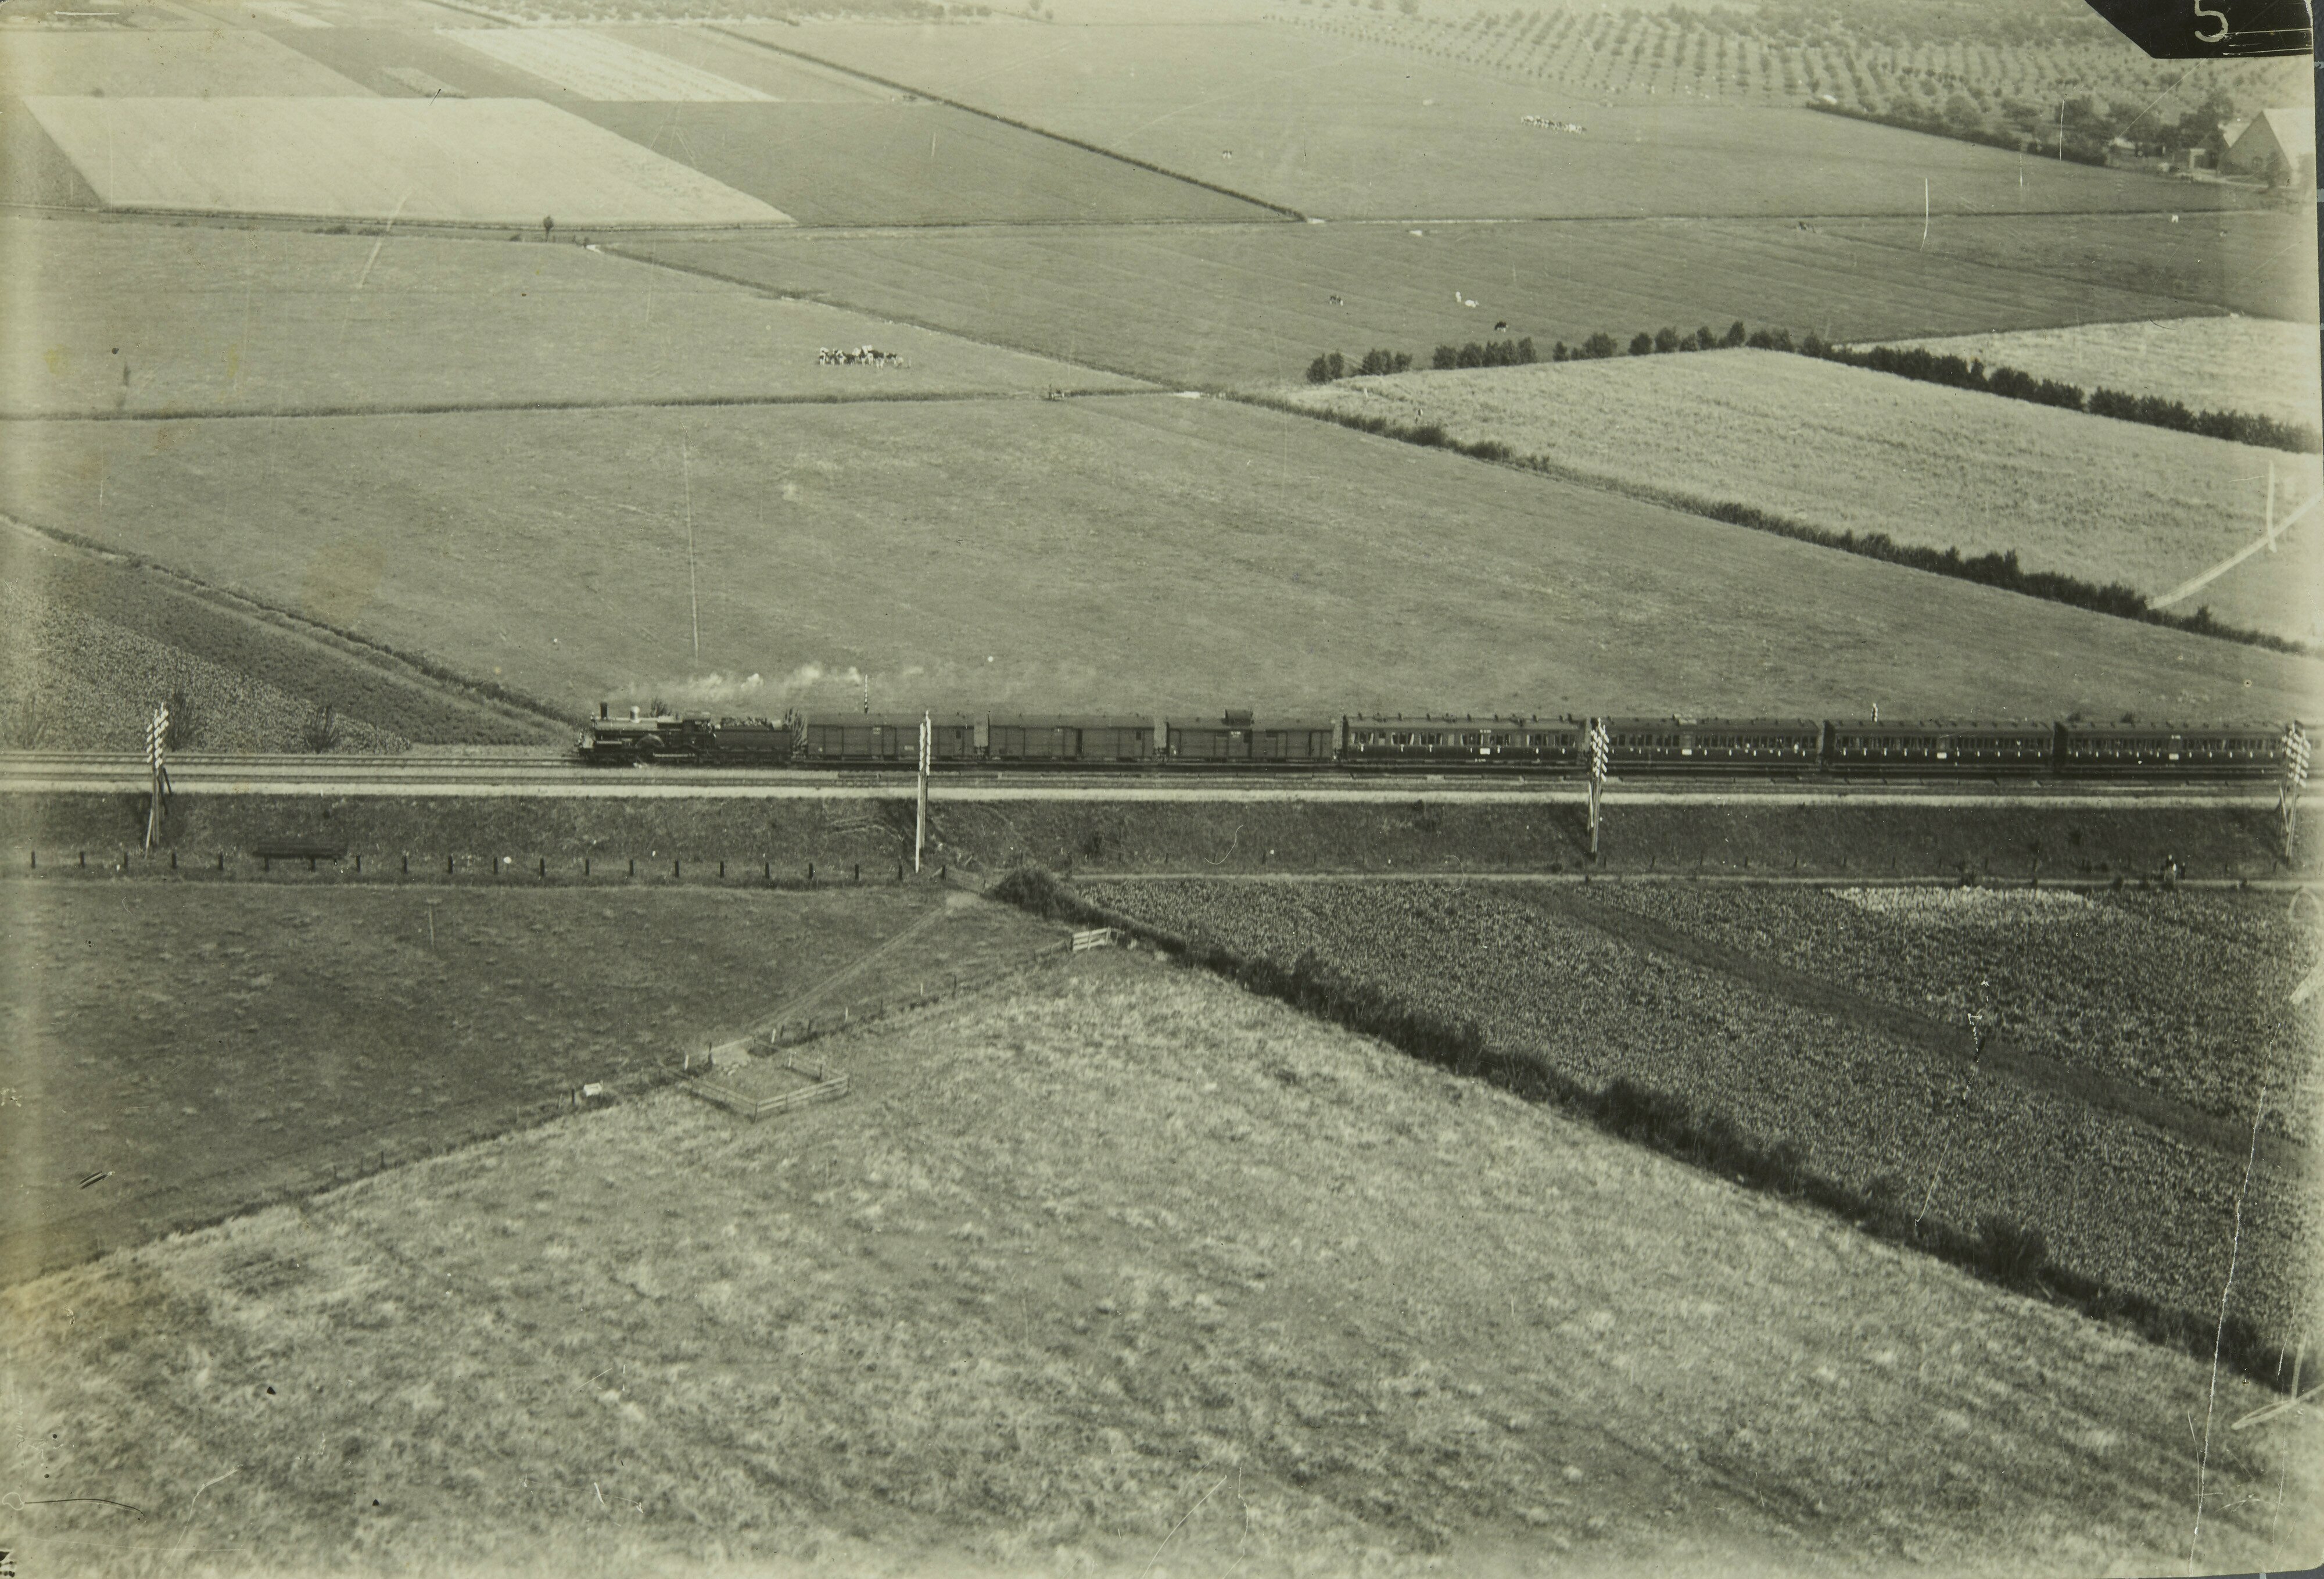 Train in Gelderland. 1920-1940